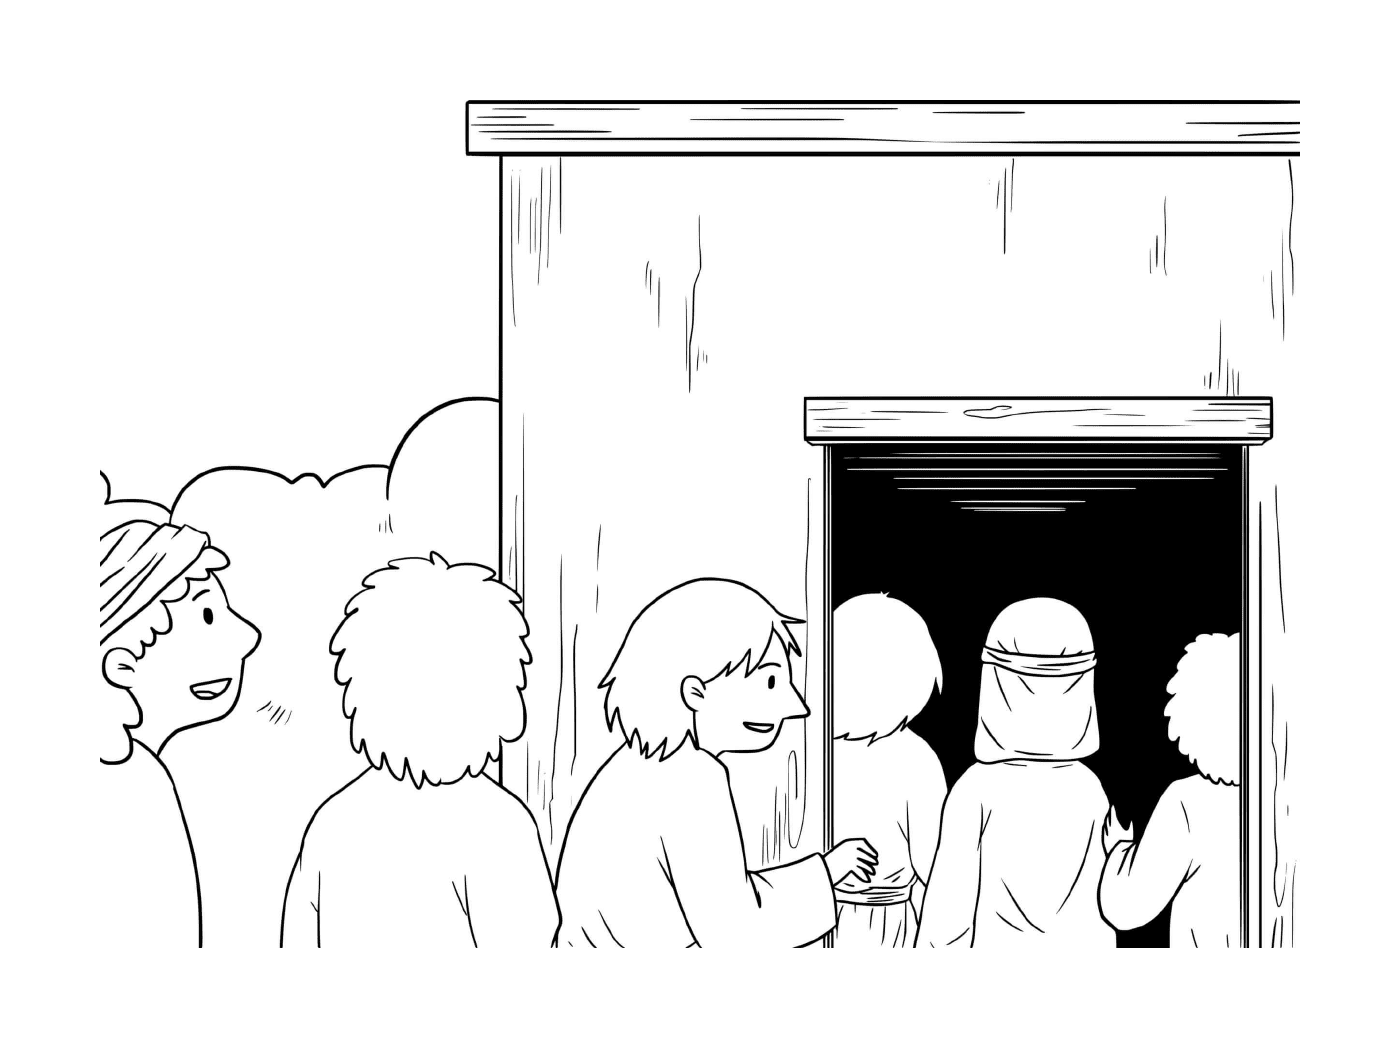  Группа лиц перед зданием 